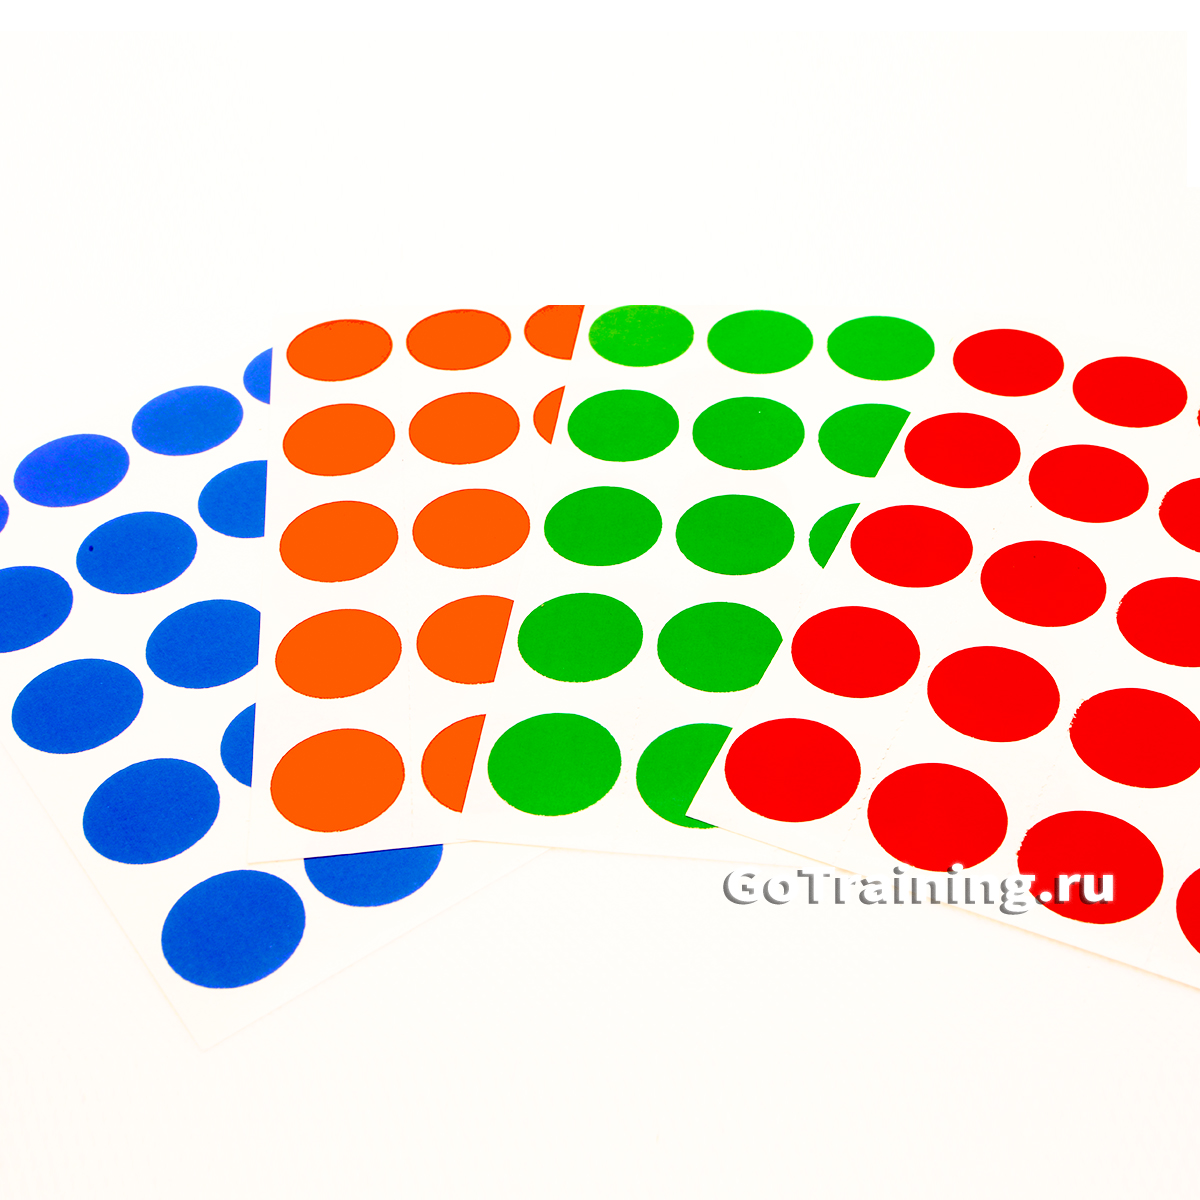 Метки для голосования в наборе (красный, синий, зеленый, оранжевый)